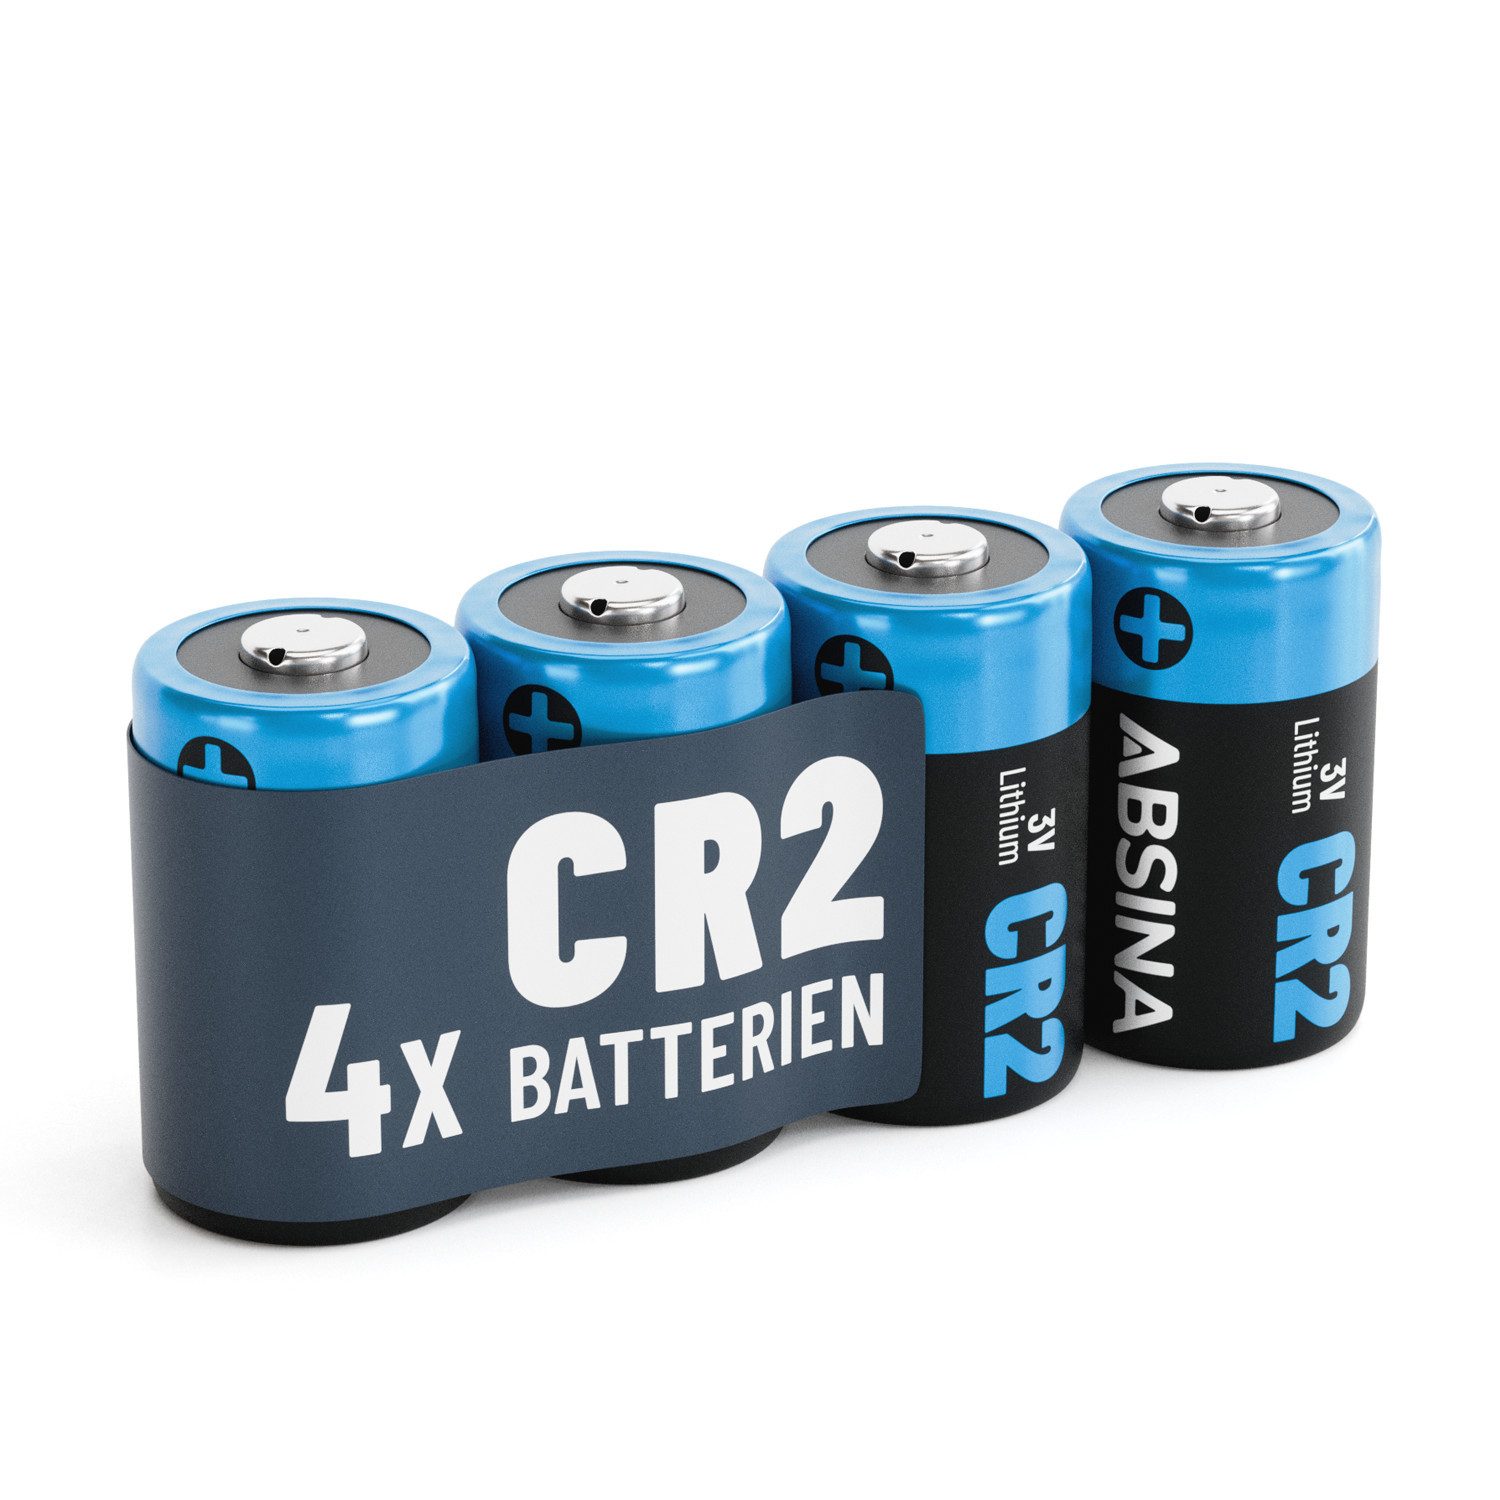 ABSINA 4x CR2 3V Lithium Batterie für Kamera, Fotoapparat, auslaufsicher Batterie, (1 St)